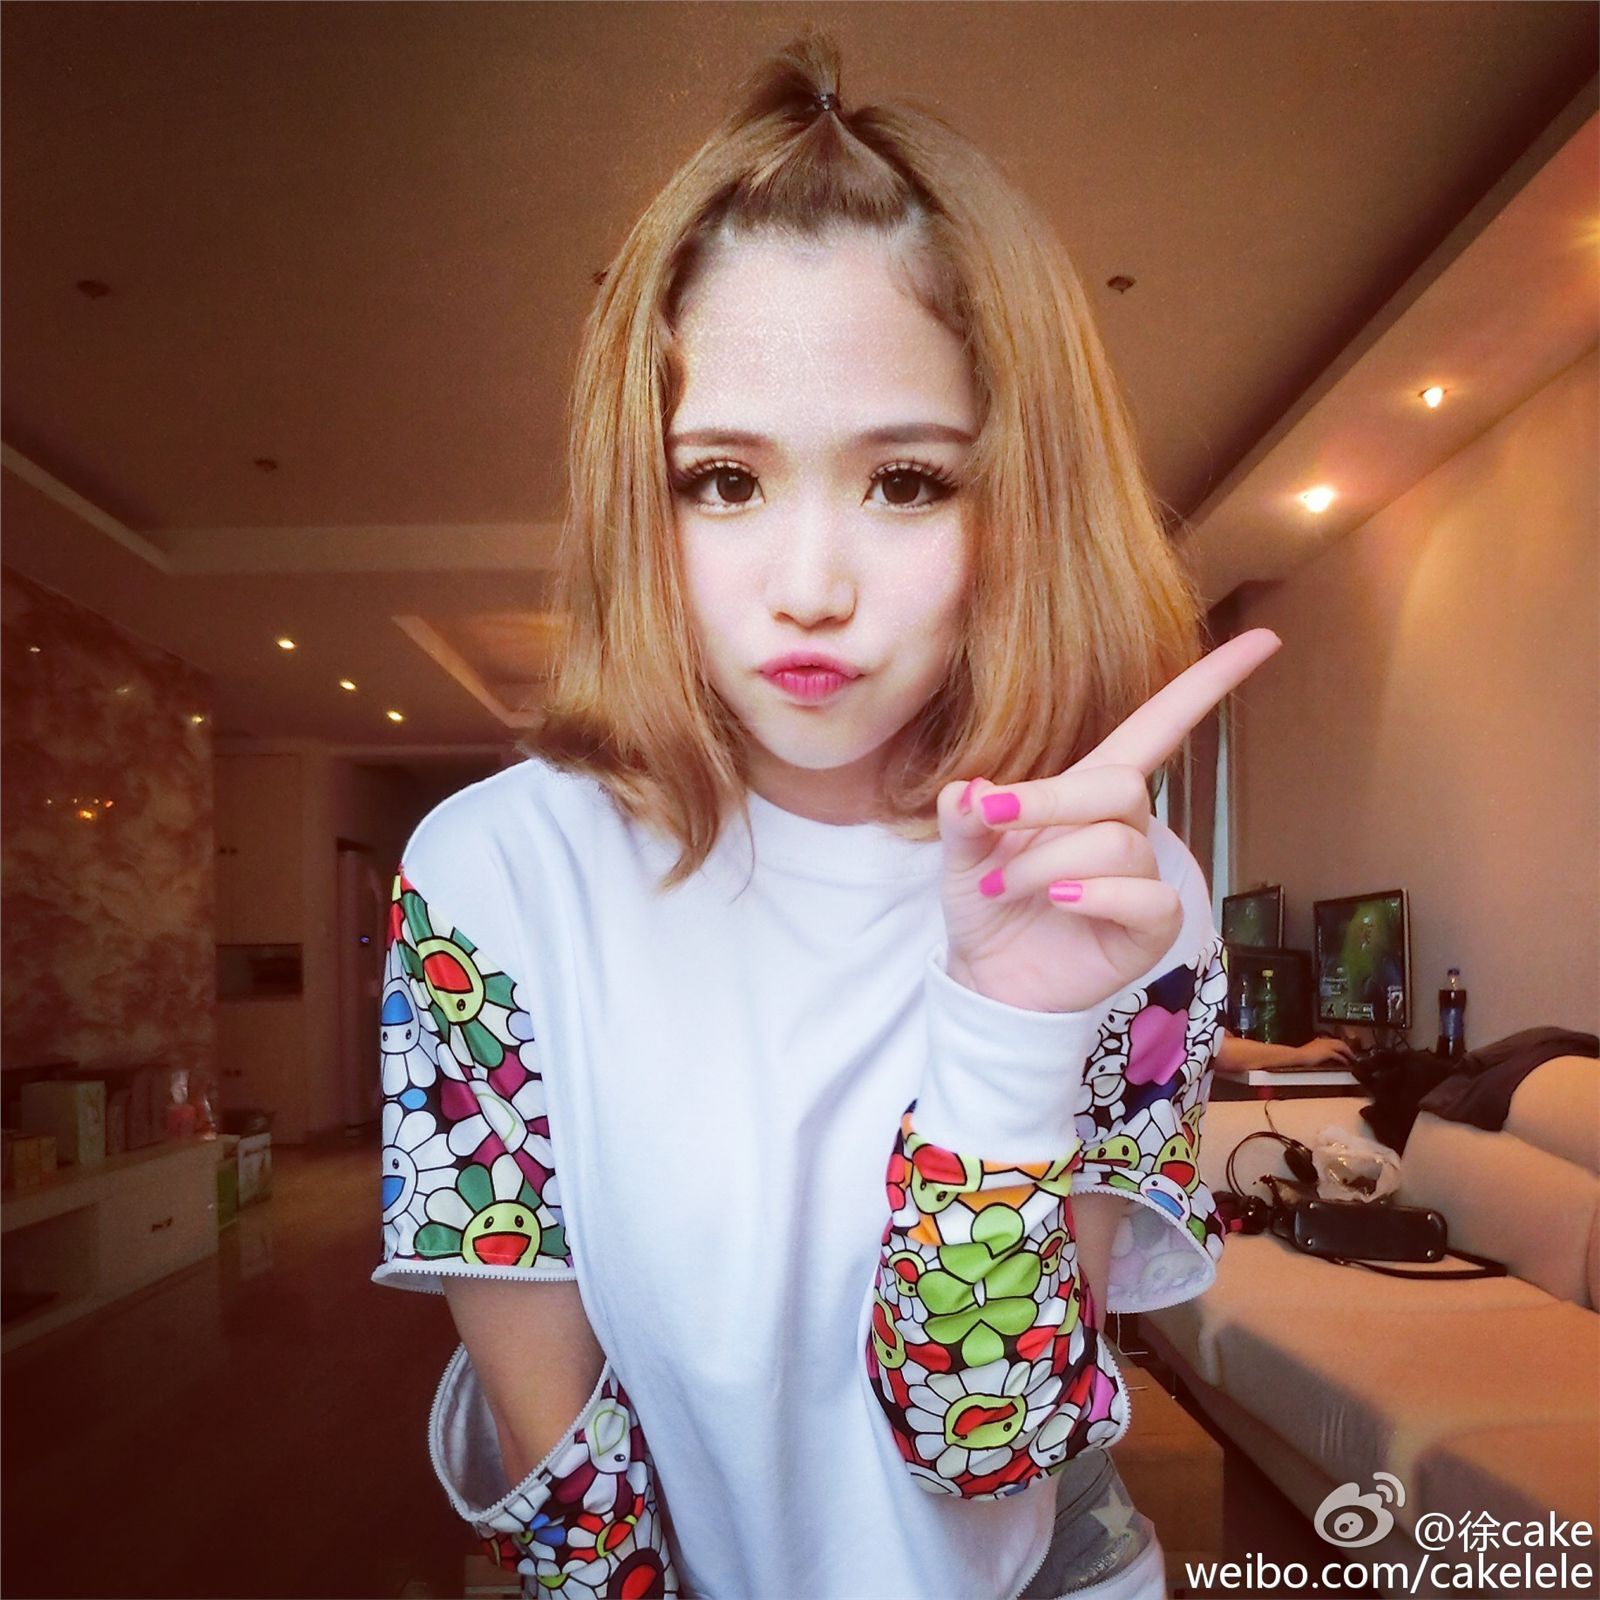 上海2015ChinaJoy模特艾西Ashley微博图集 1